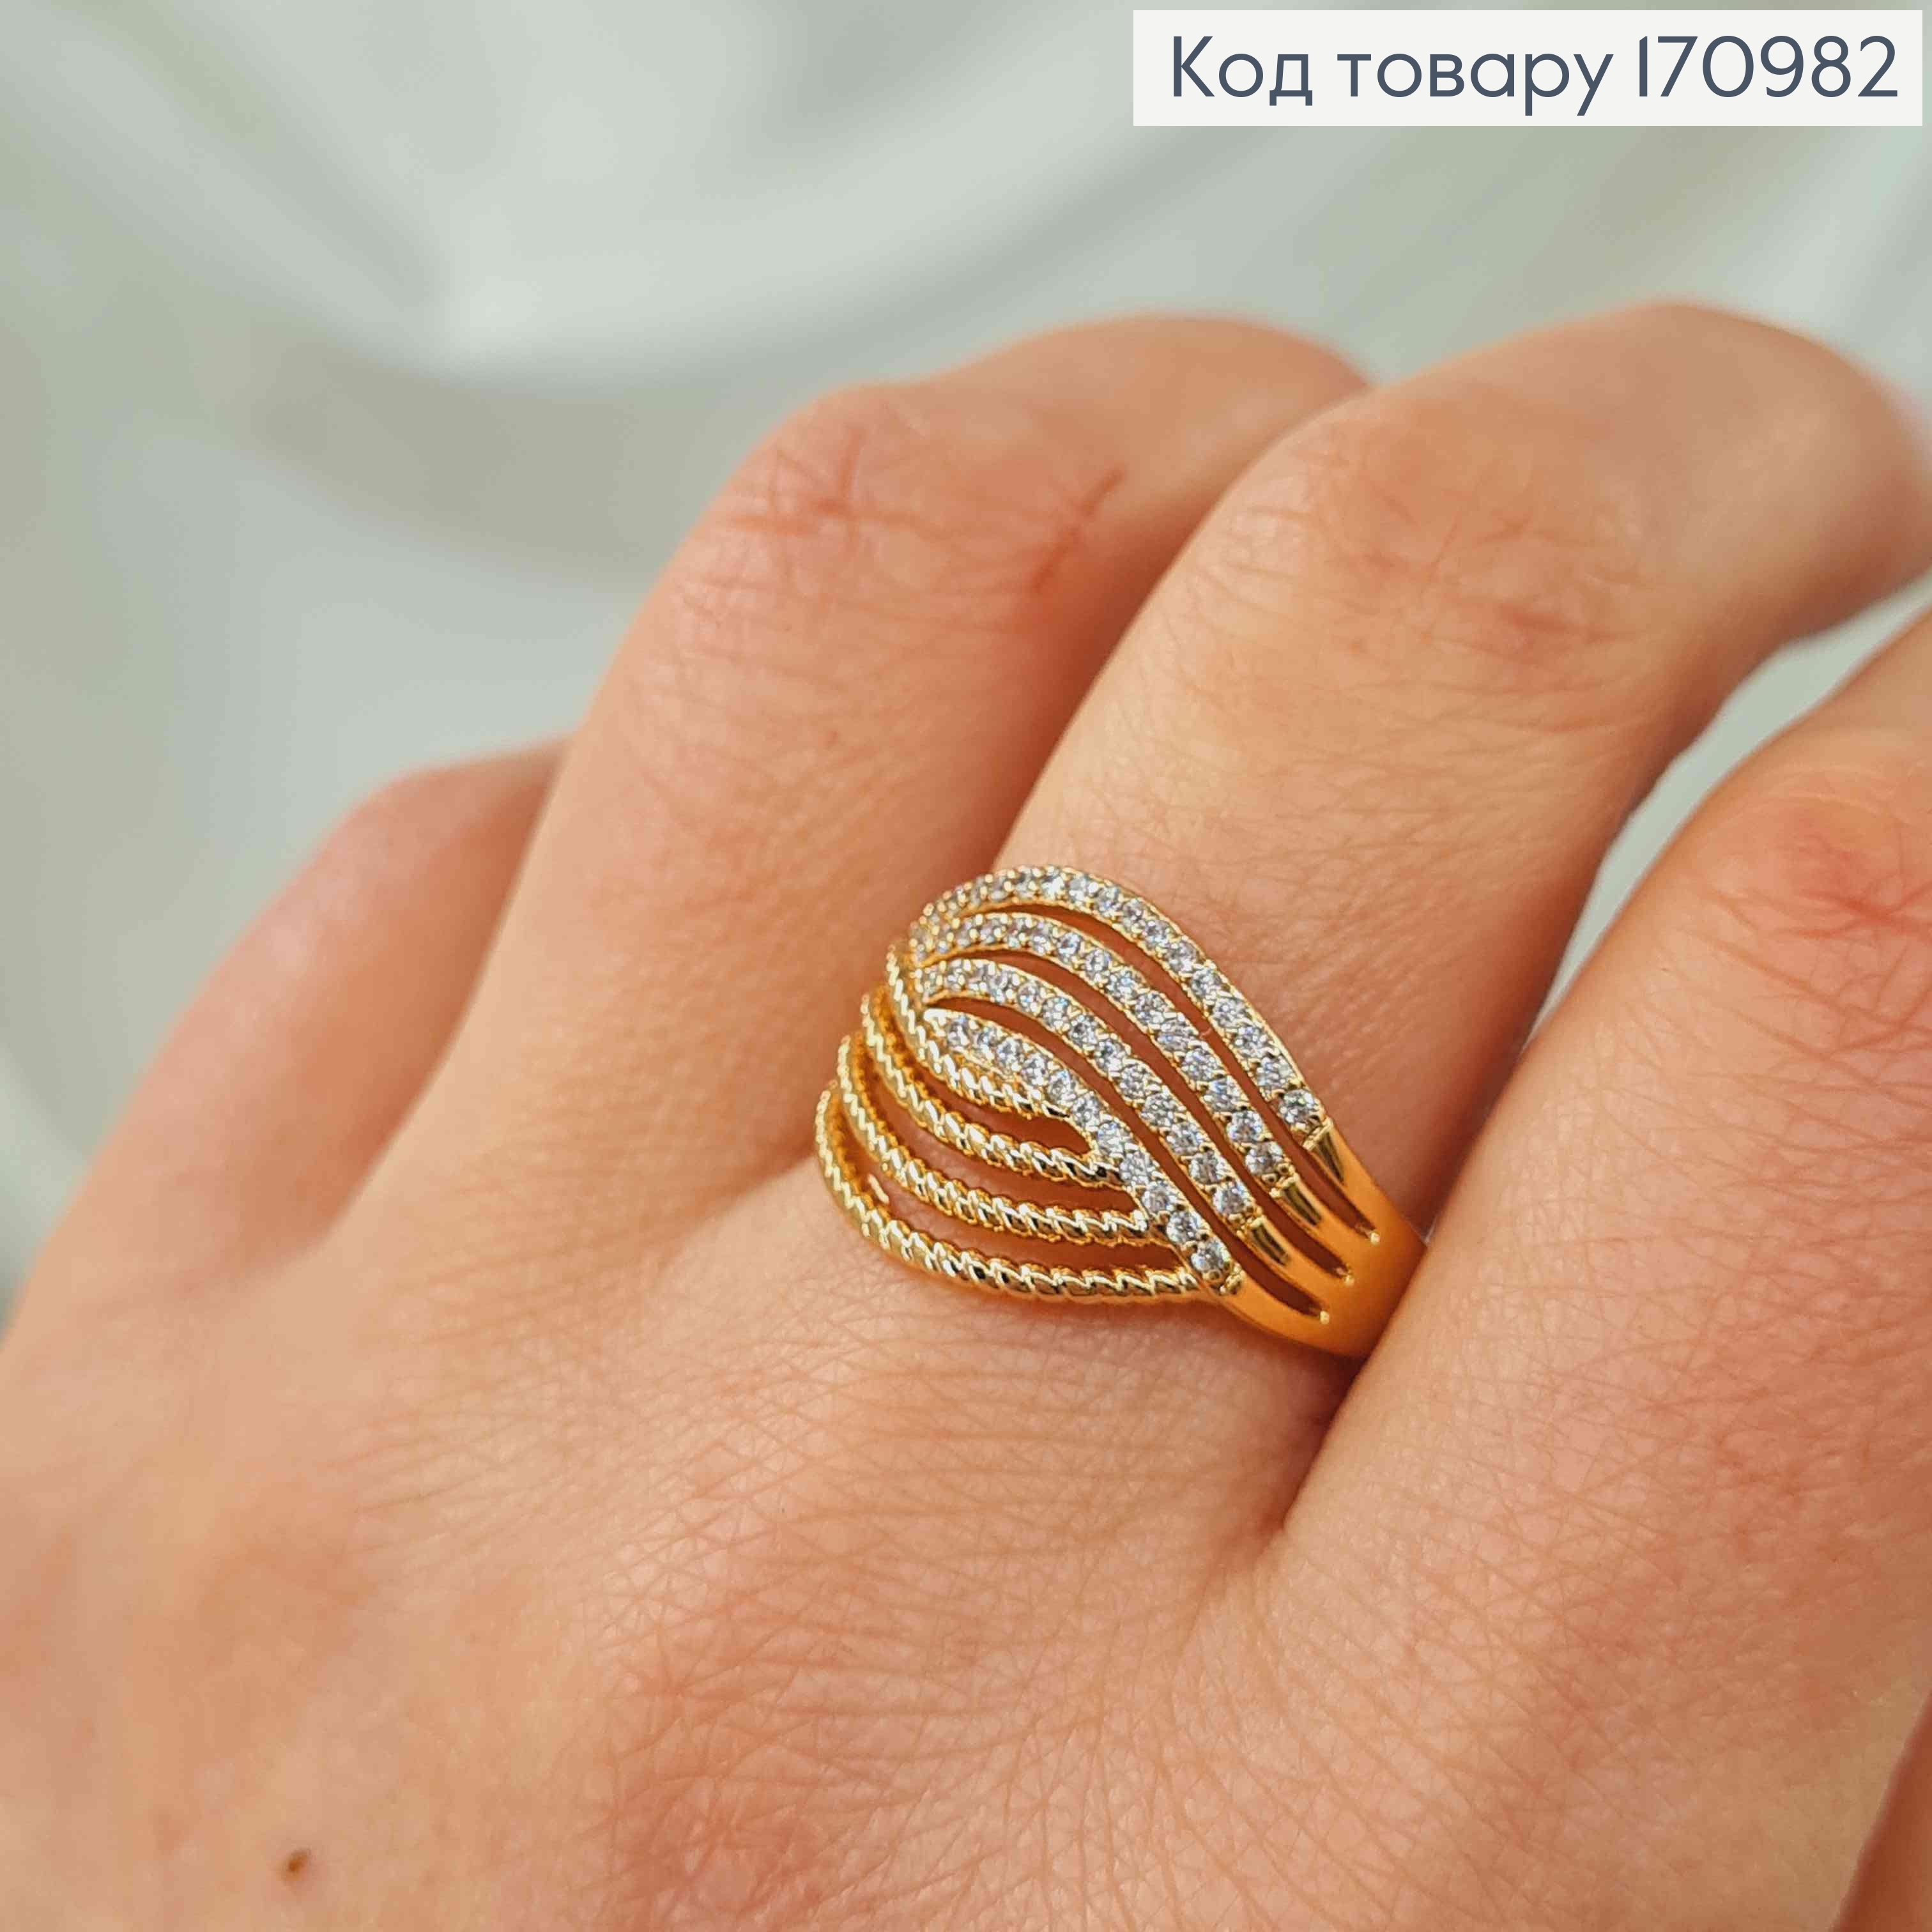 Кольцо широкое, с переплетением в камнях, Xuping 18K 170982 фото 2